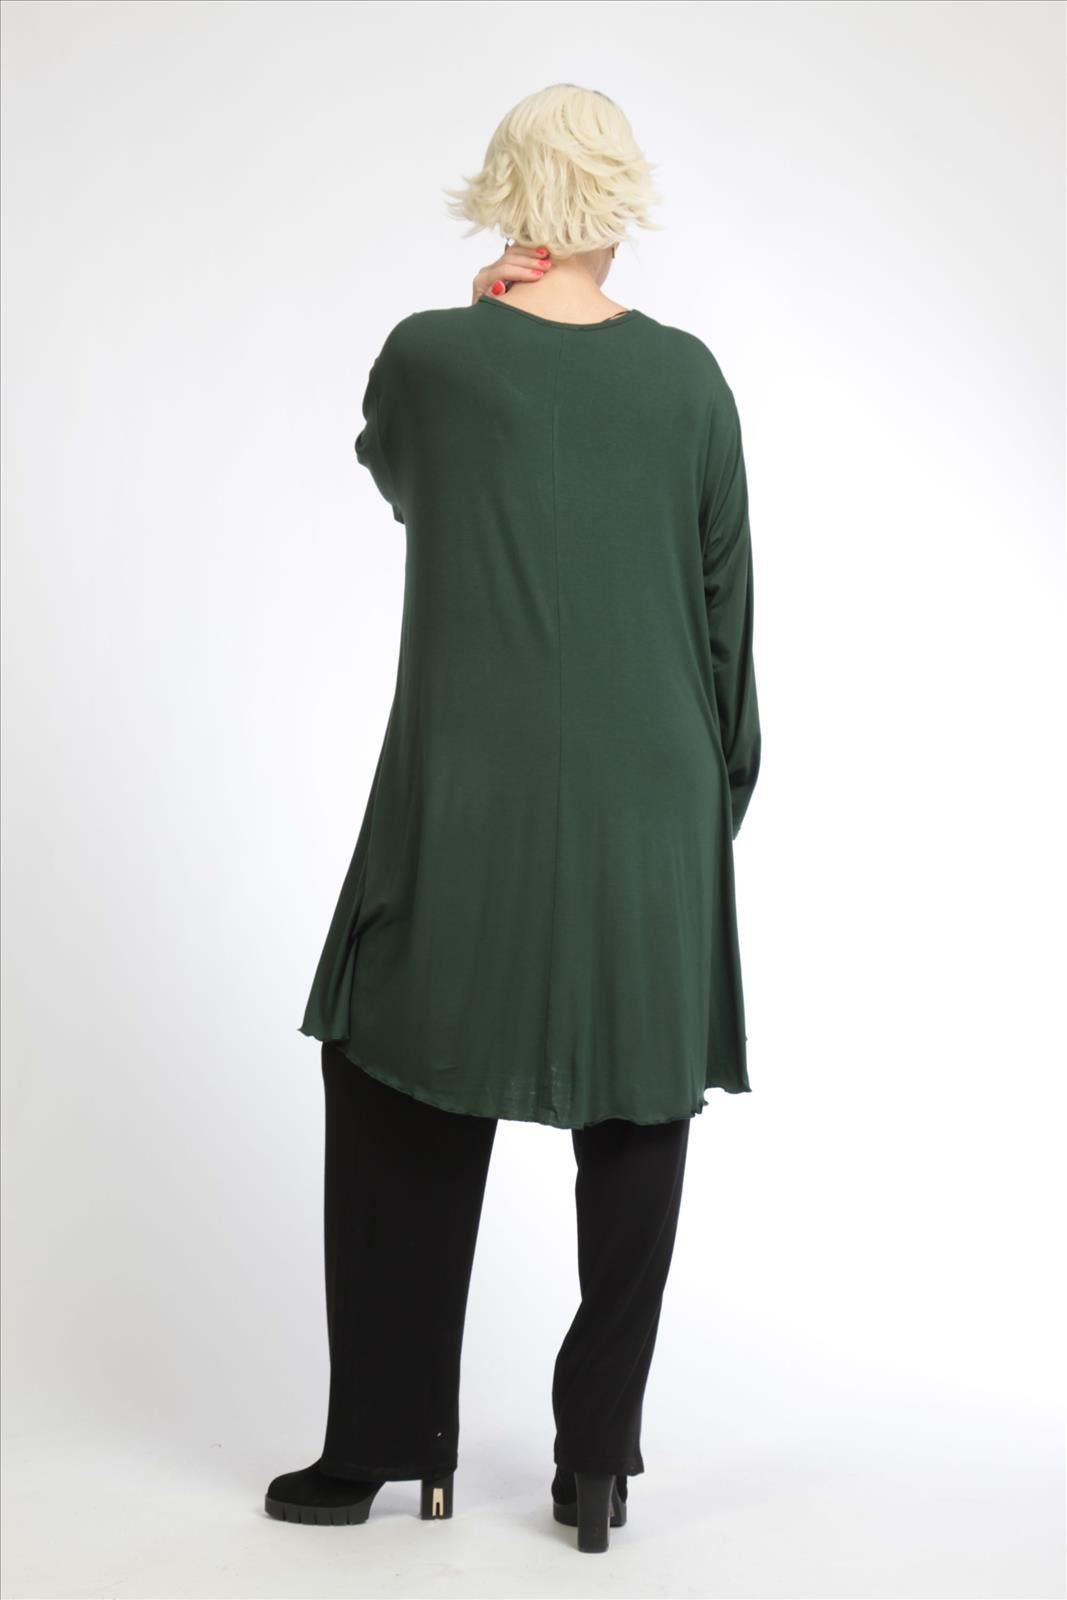 Alltags Big Shirt in A-Form aus feiner Jersey Qualität, Grün Lagenlook Oversize Mode B2B Großhandel